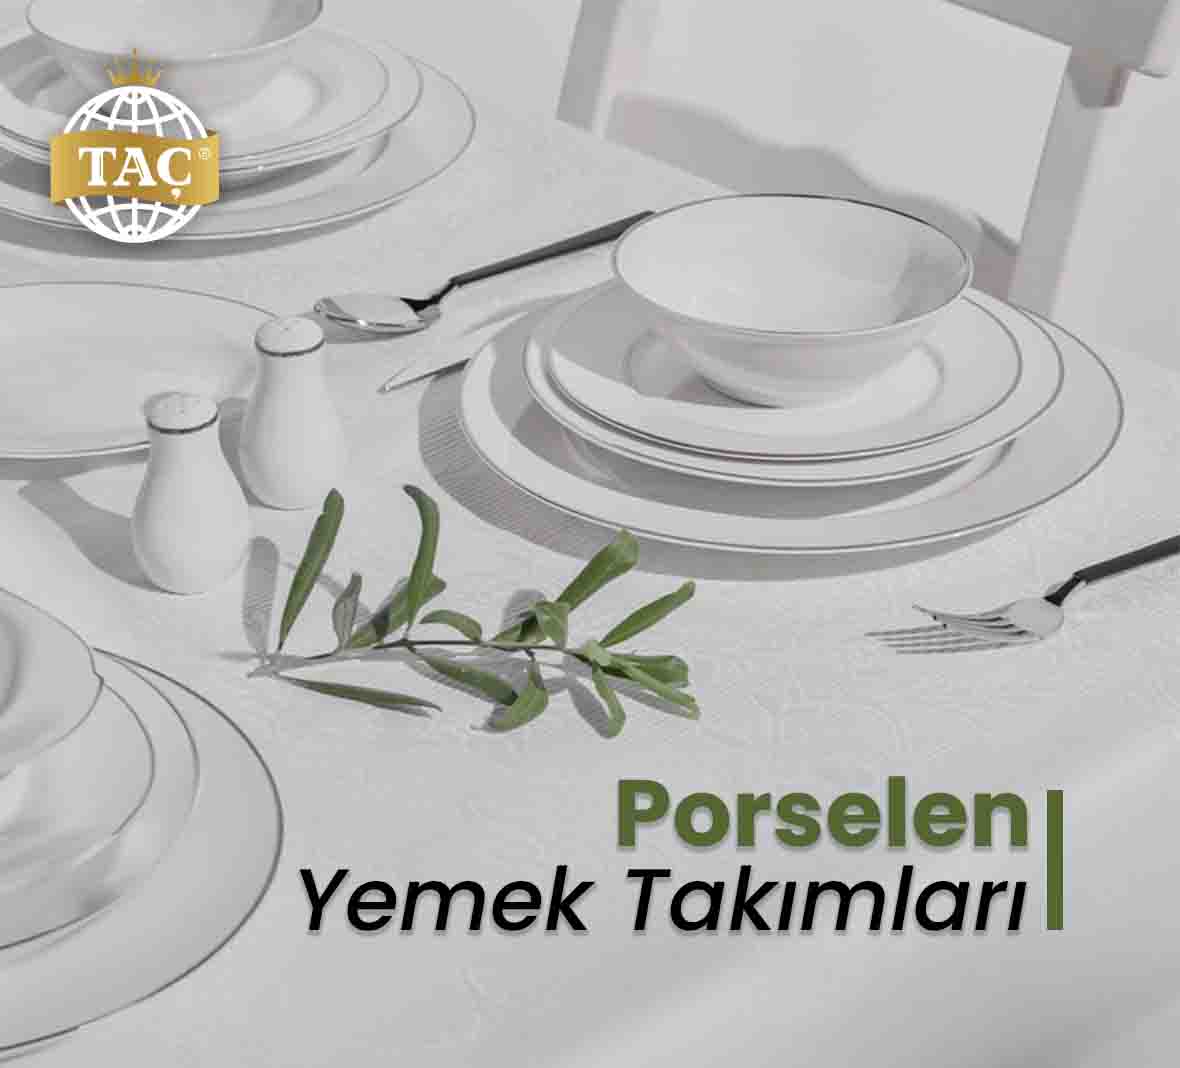 Porselen Yemek Takımları - Taç - Tacev.com